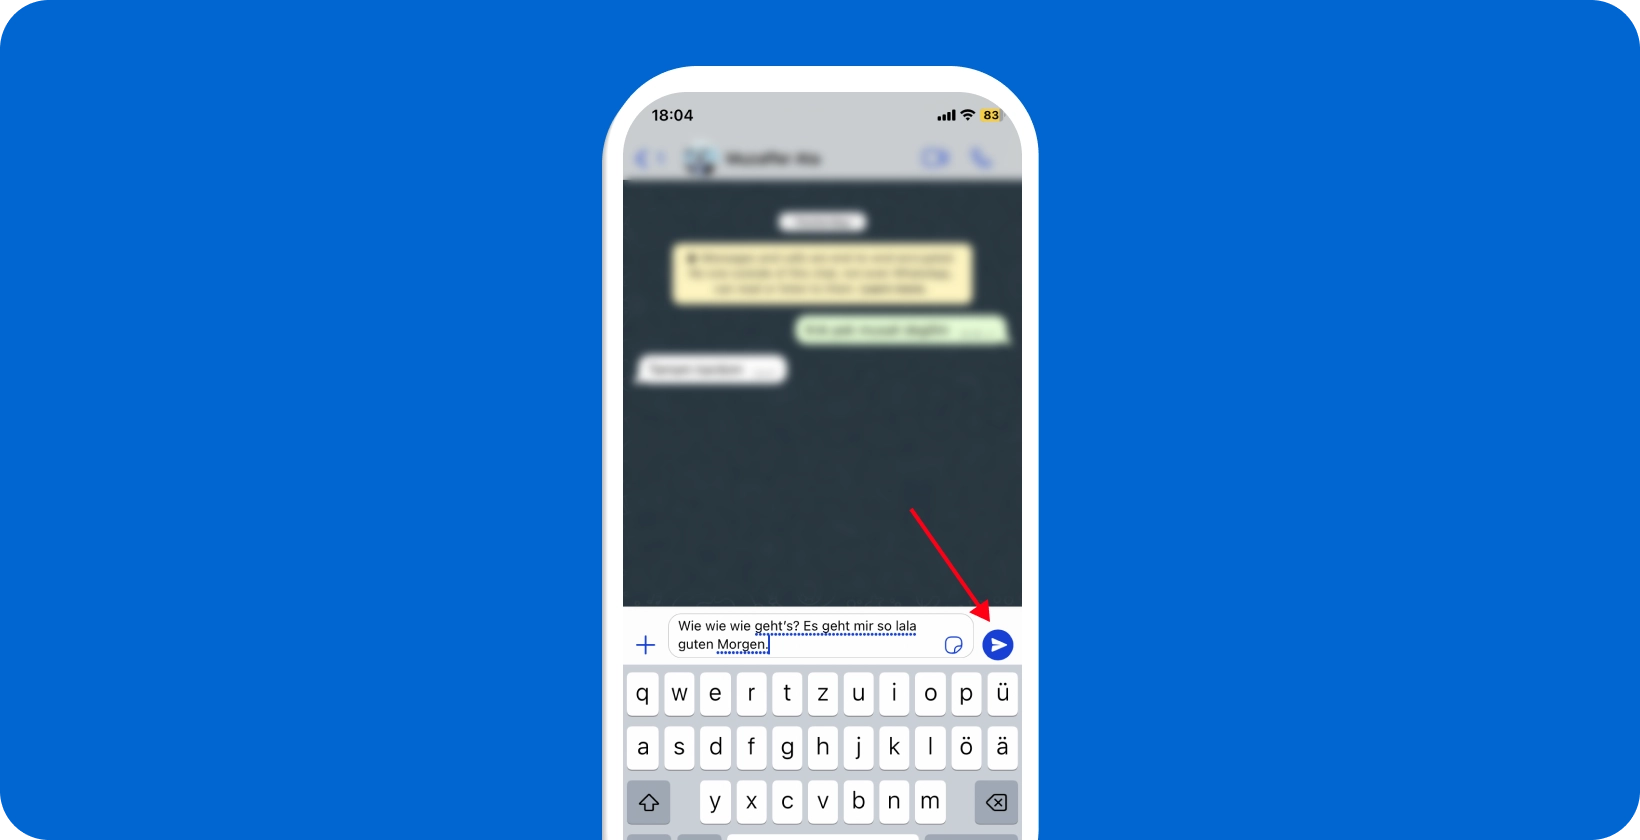 Älypuhelimen näyttö, jossa näkyy WhatsApp äänisaneluominaisuuden käyttö ja mikrofonikuvake korostettuna.